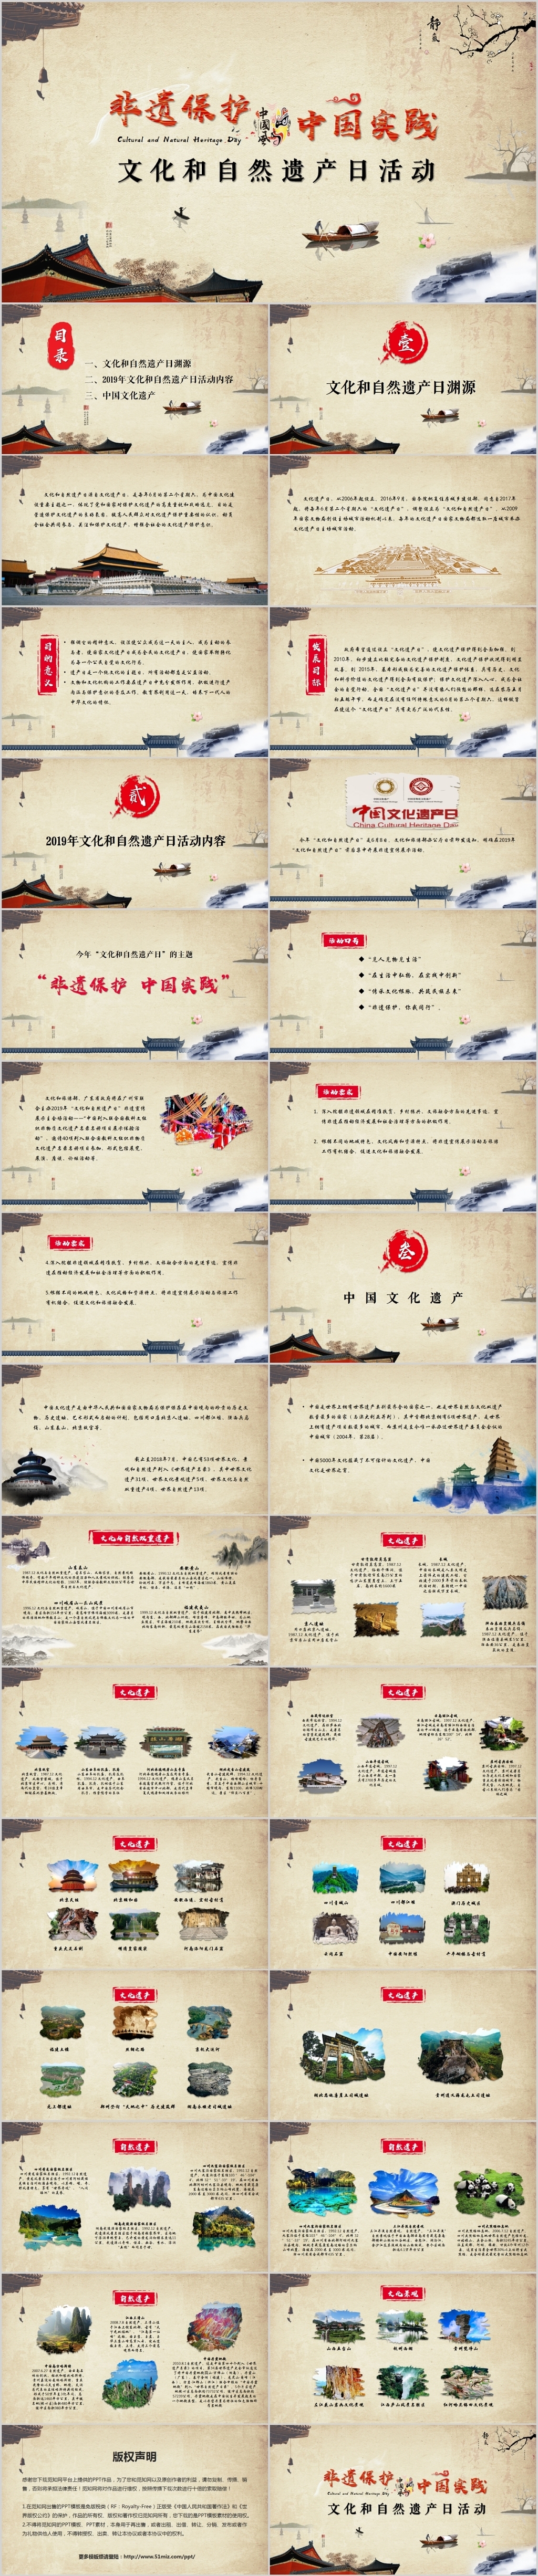 中国风非遗保护中国实践中国文化遗产日文化与自然遗产日ppt